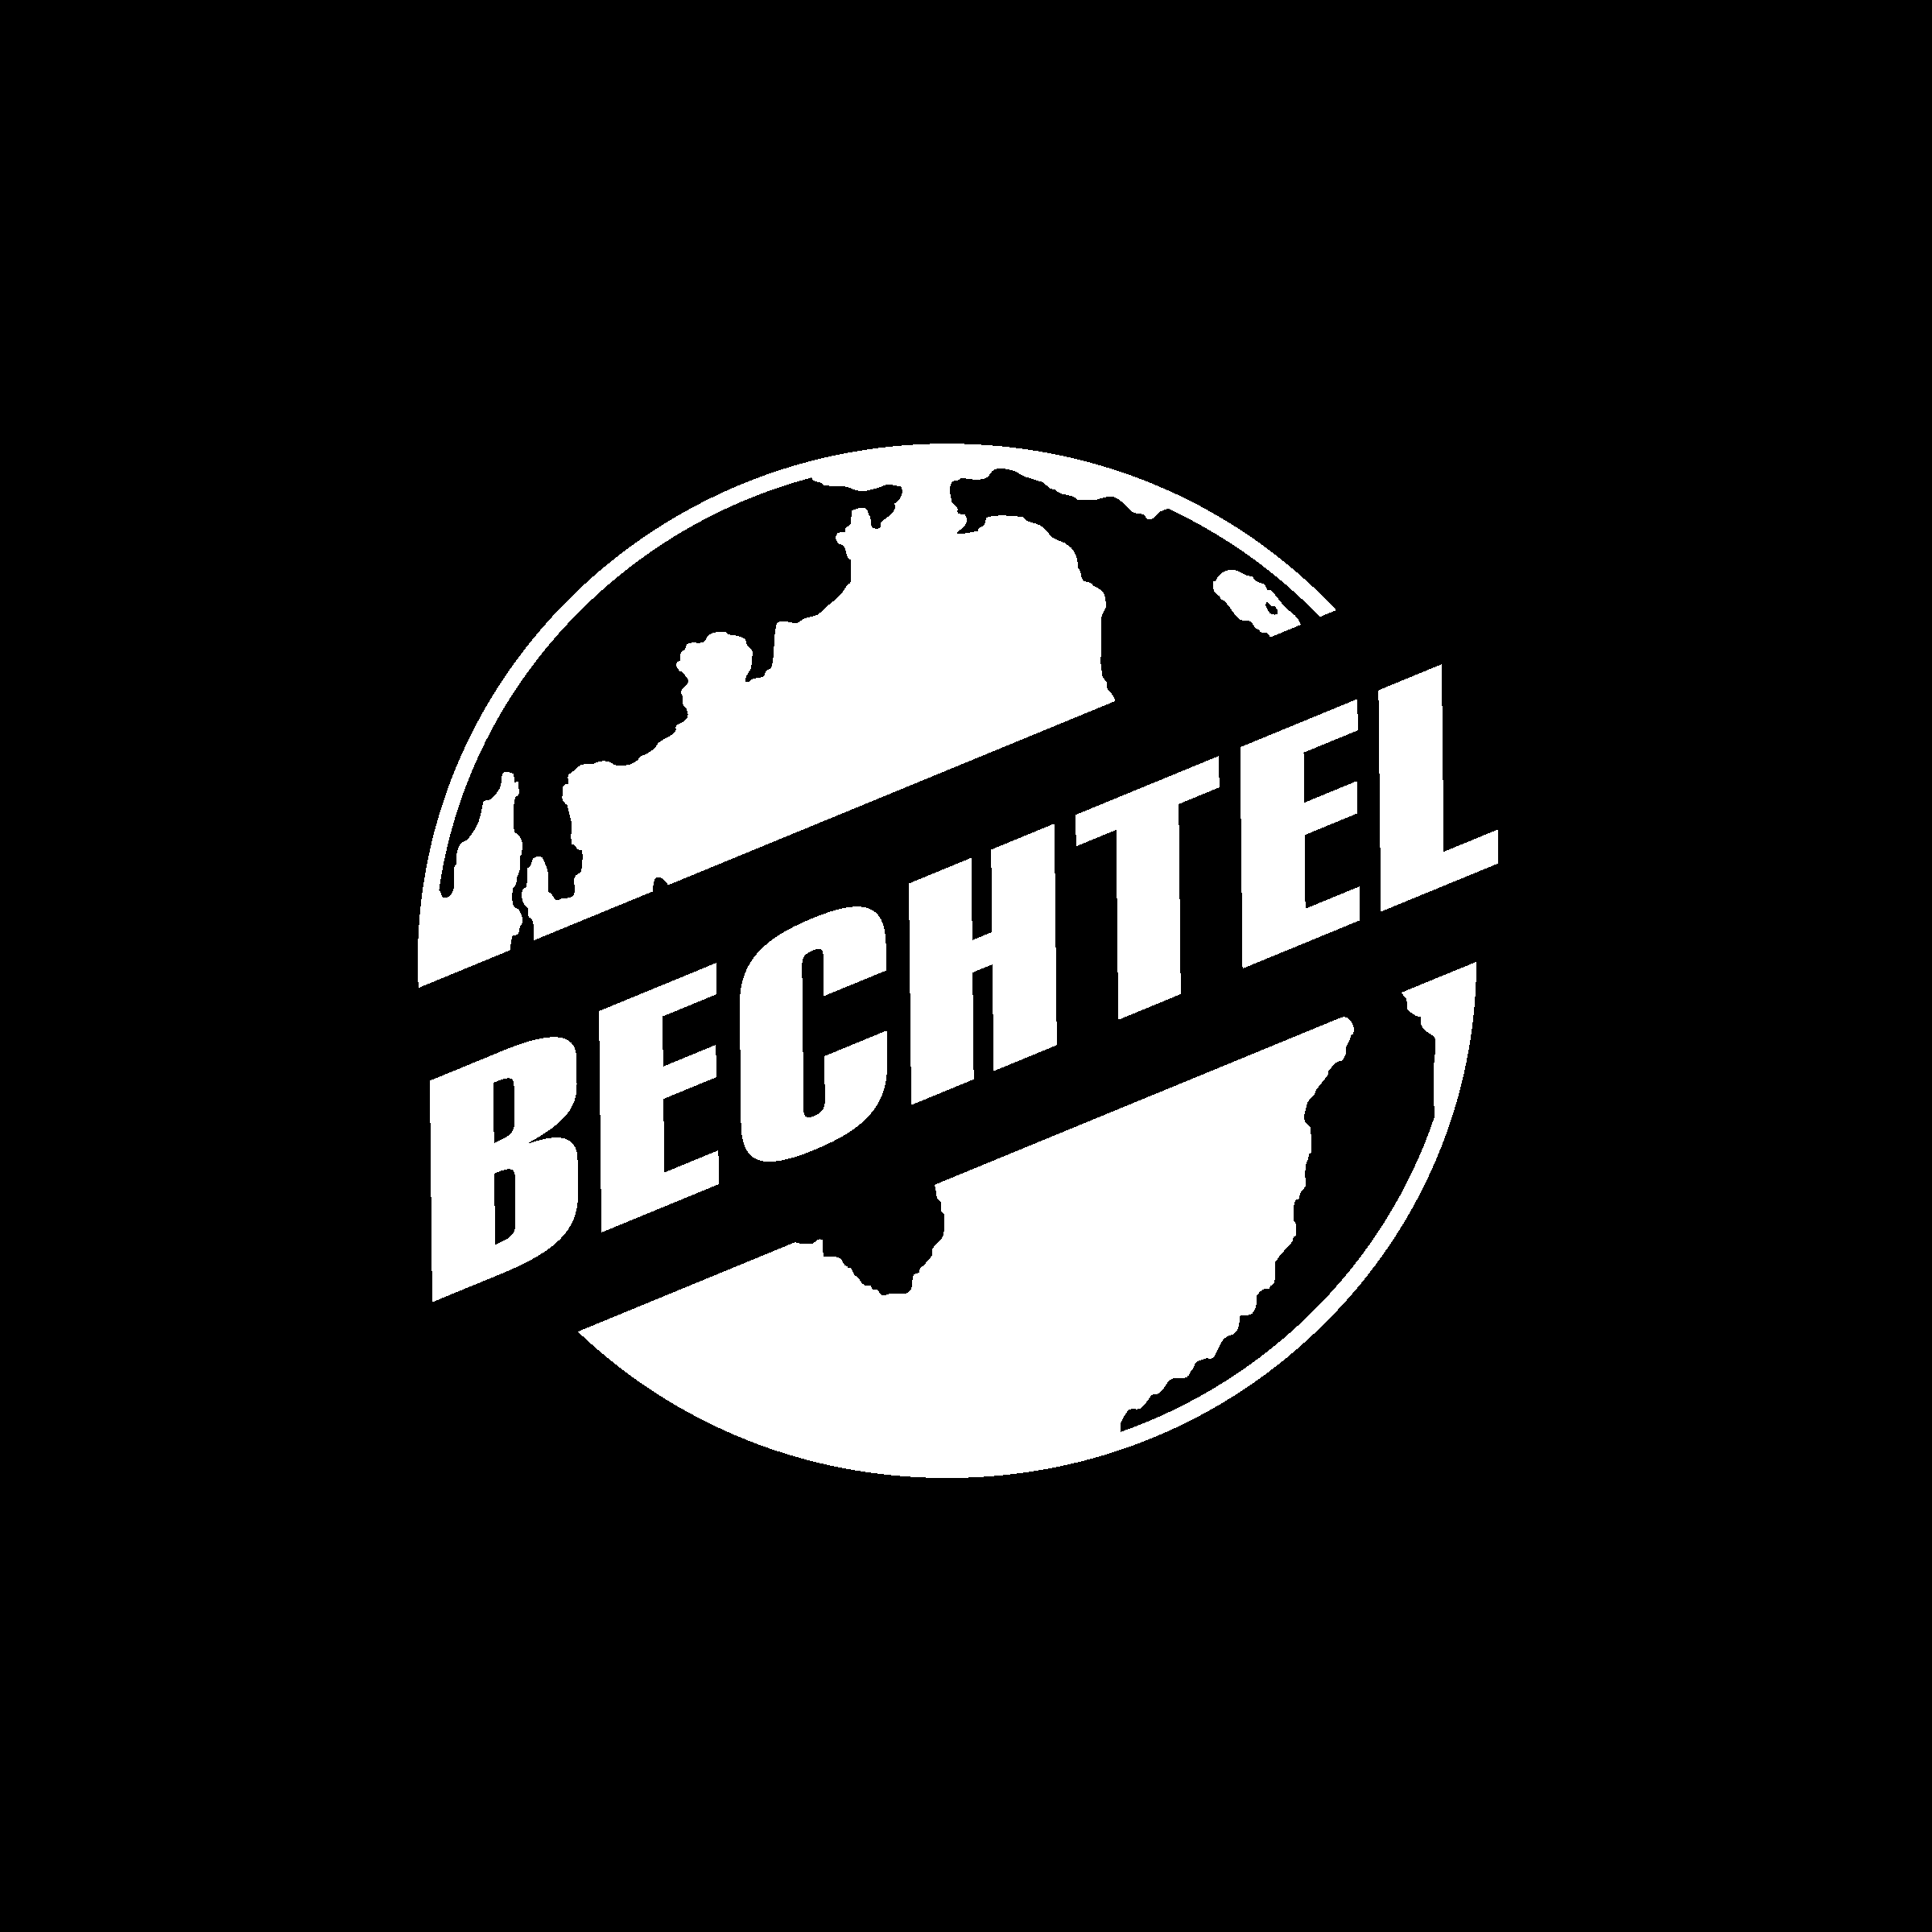 Bechtel Logo - Bechtel 2 Logo PNG Transparent & SVG Vector - Freebie Supply